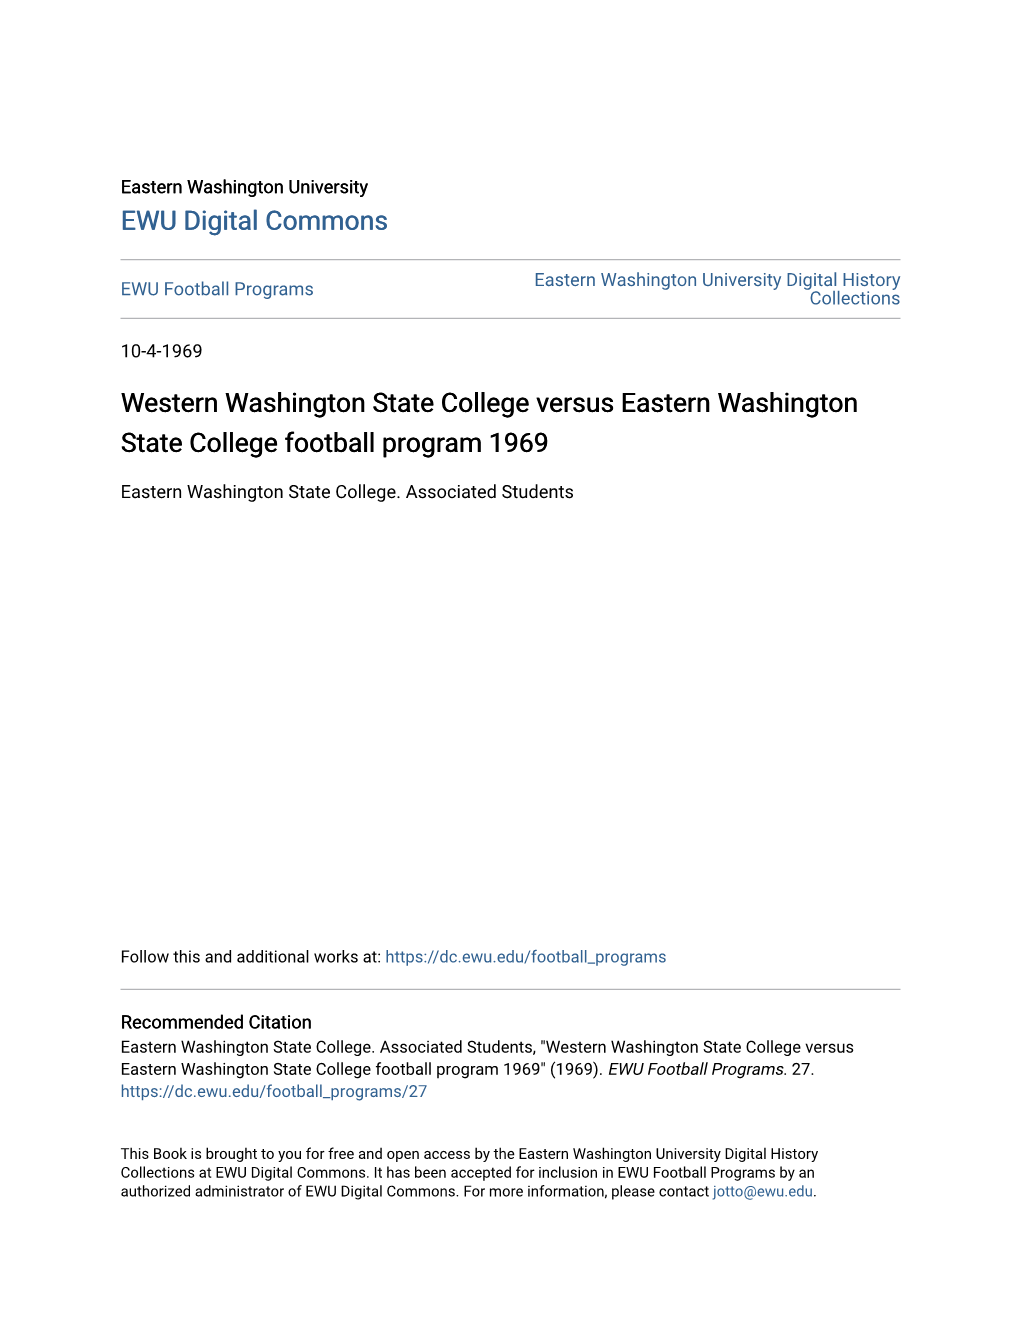 Western Washington State College Versus Eastern Washington State College Football Program 1969